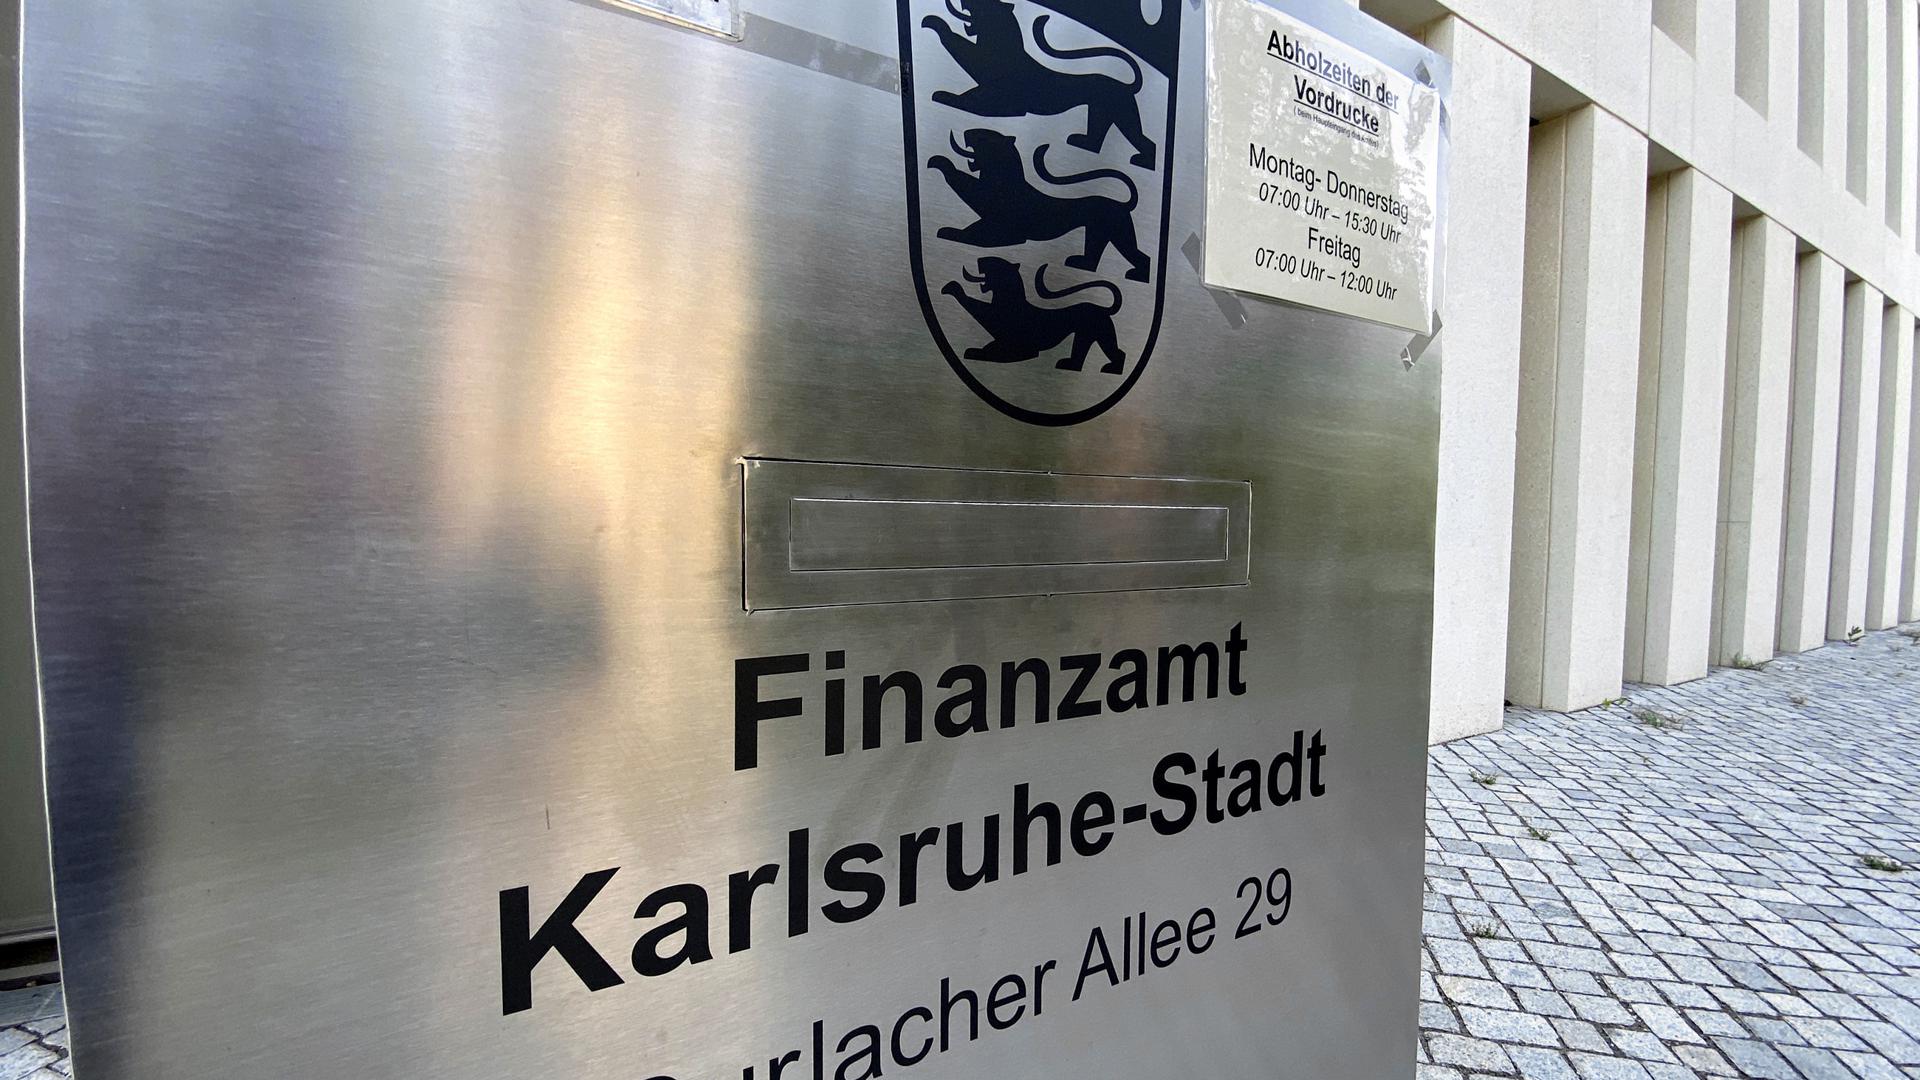 Der Briefkasten am Finanzamt in Karlsruhe-Stadt, Durlacher Allee 29.